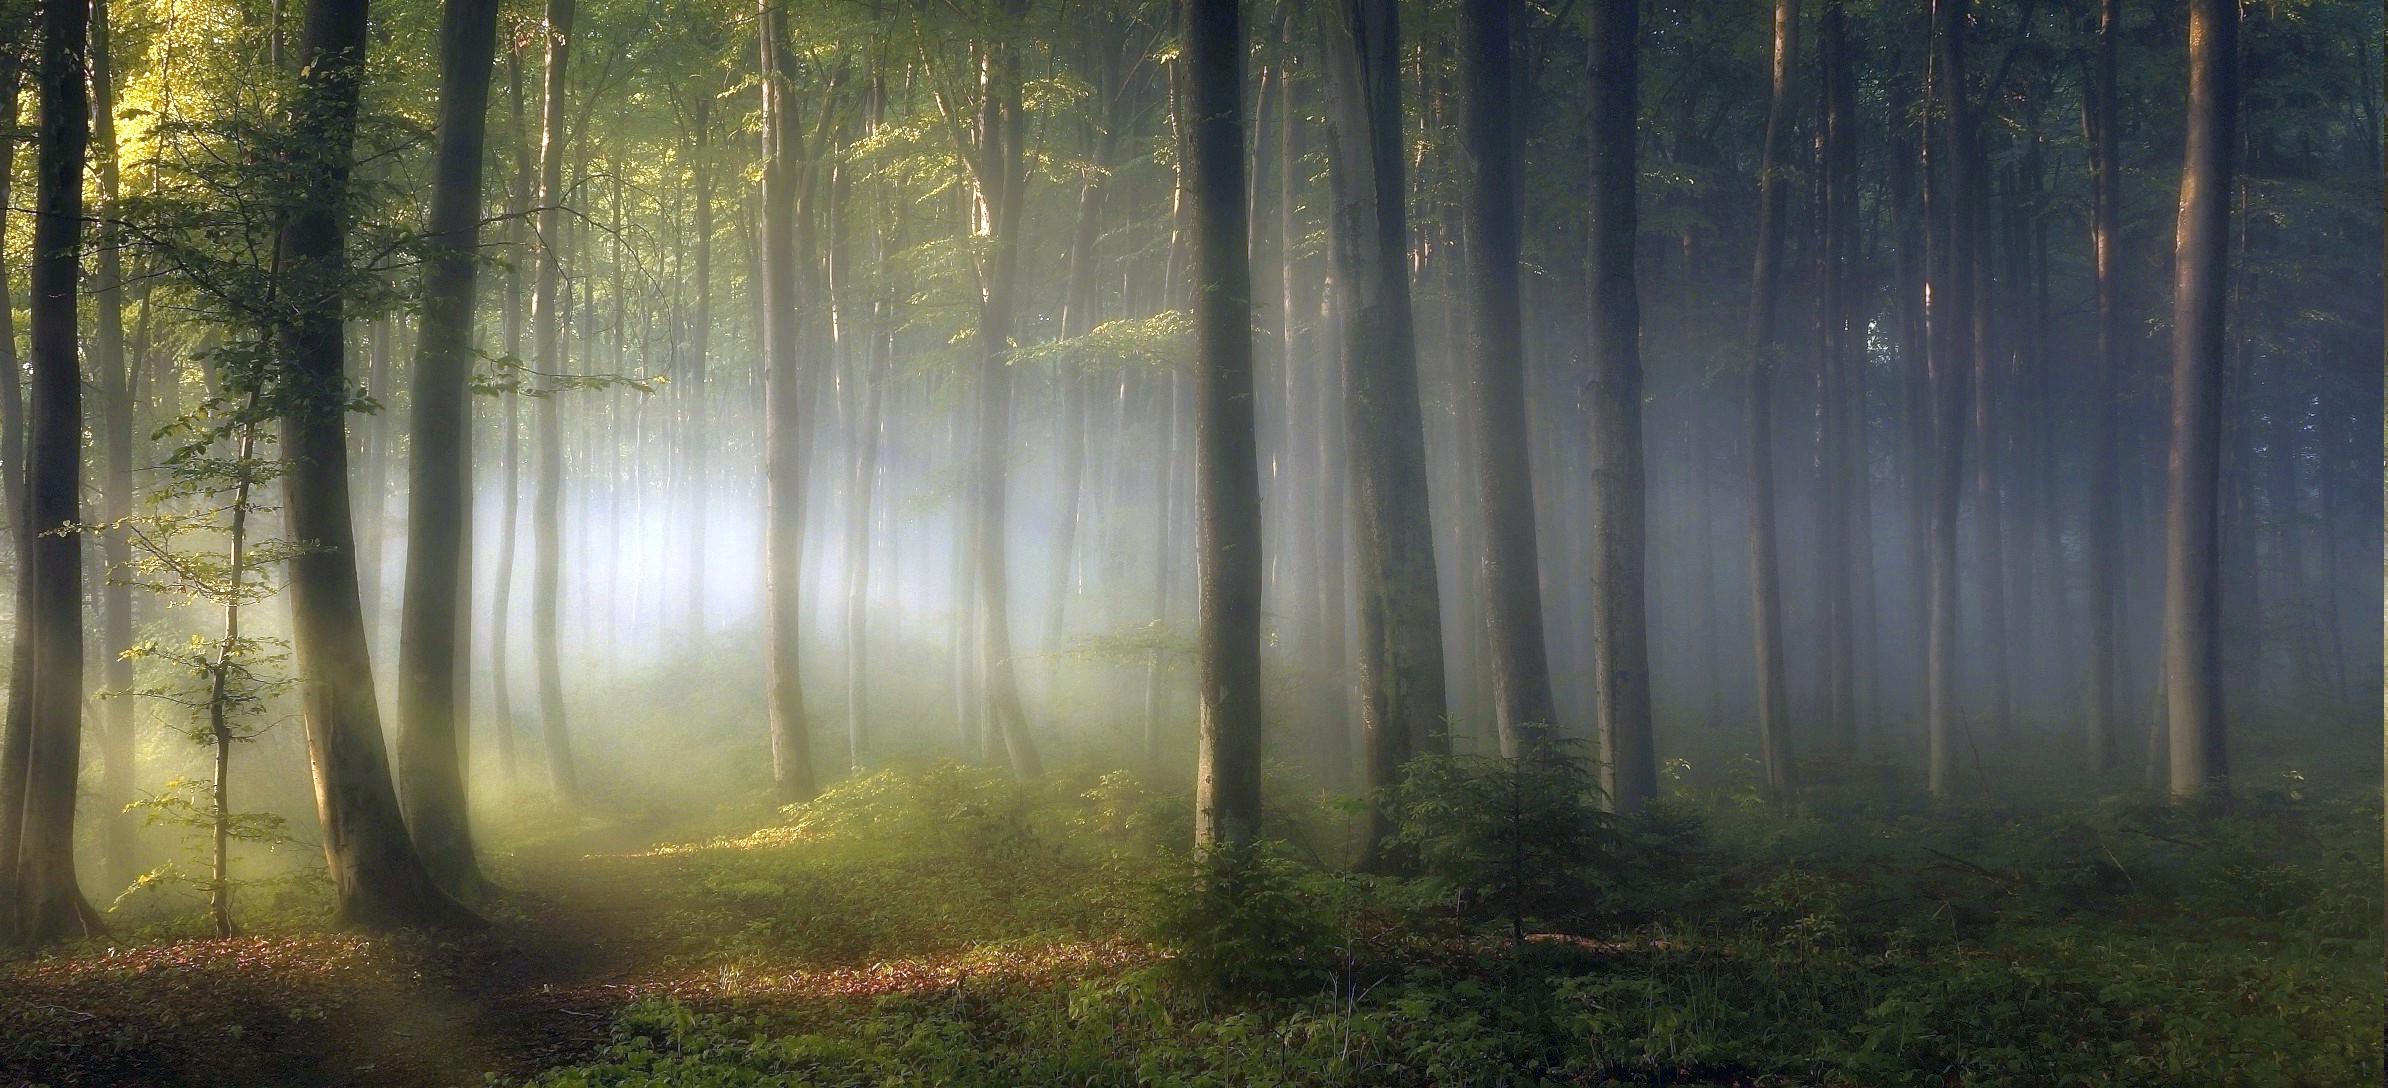 198311-morning-forest-shrubs-sunrise-trees-path-mist-leaves-green-nature-landscape.jpg